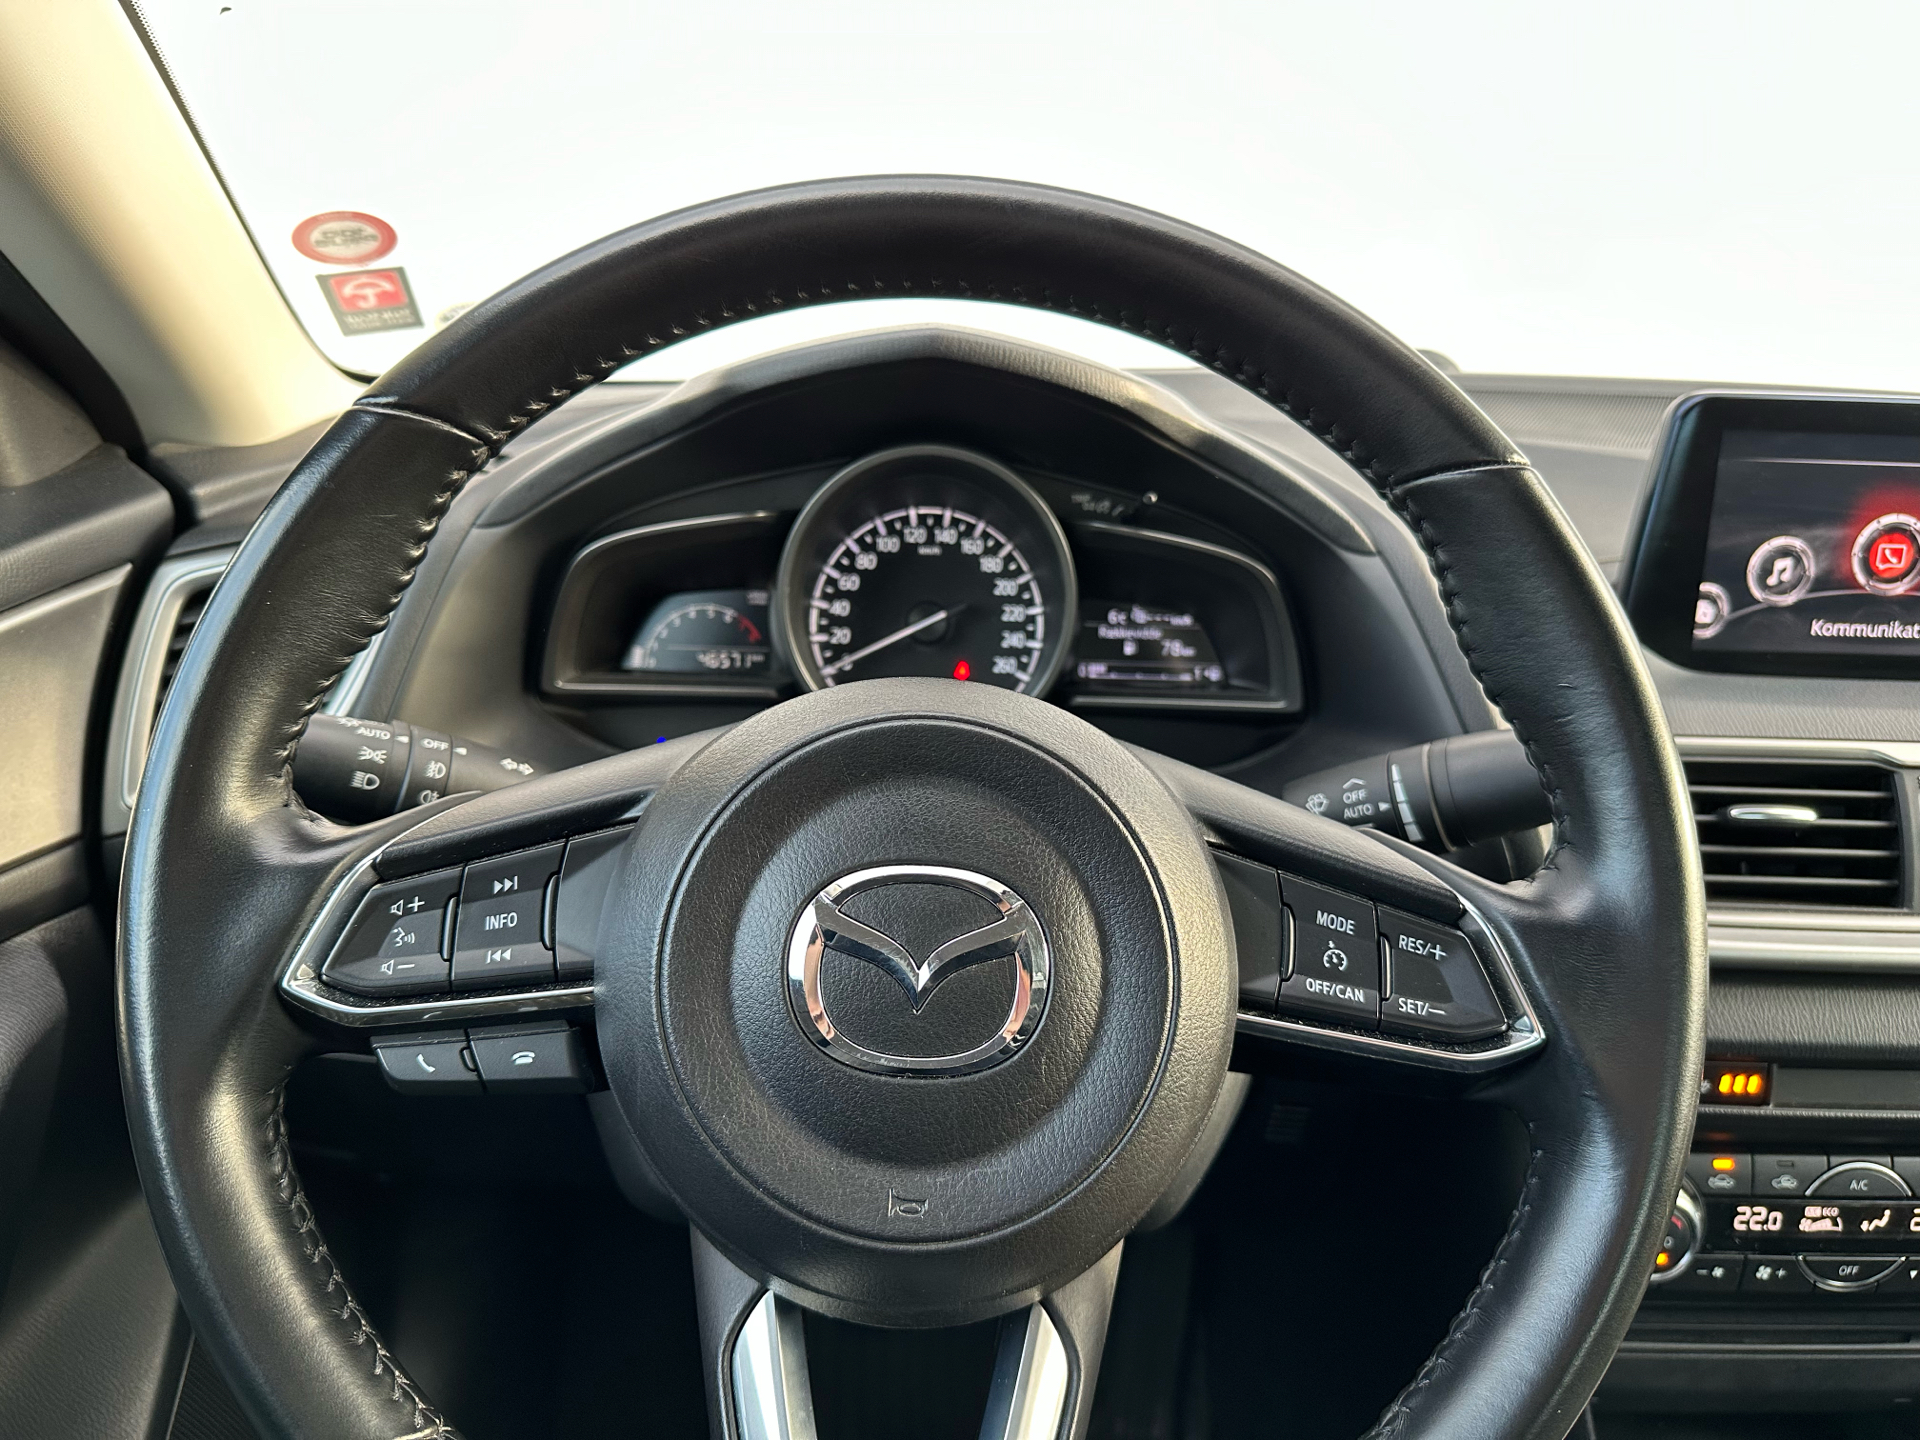 Billede af Mazda 3 2,0 Skyactiv-G Vision 120HK 6g